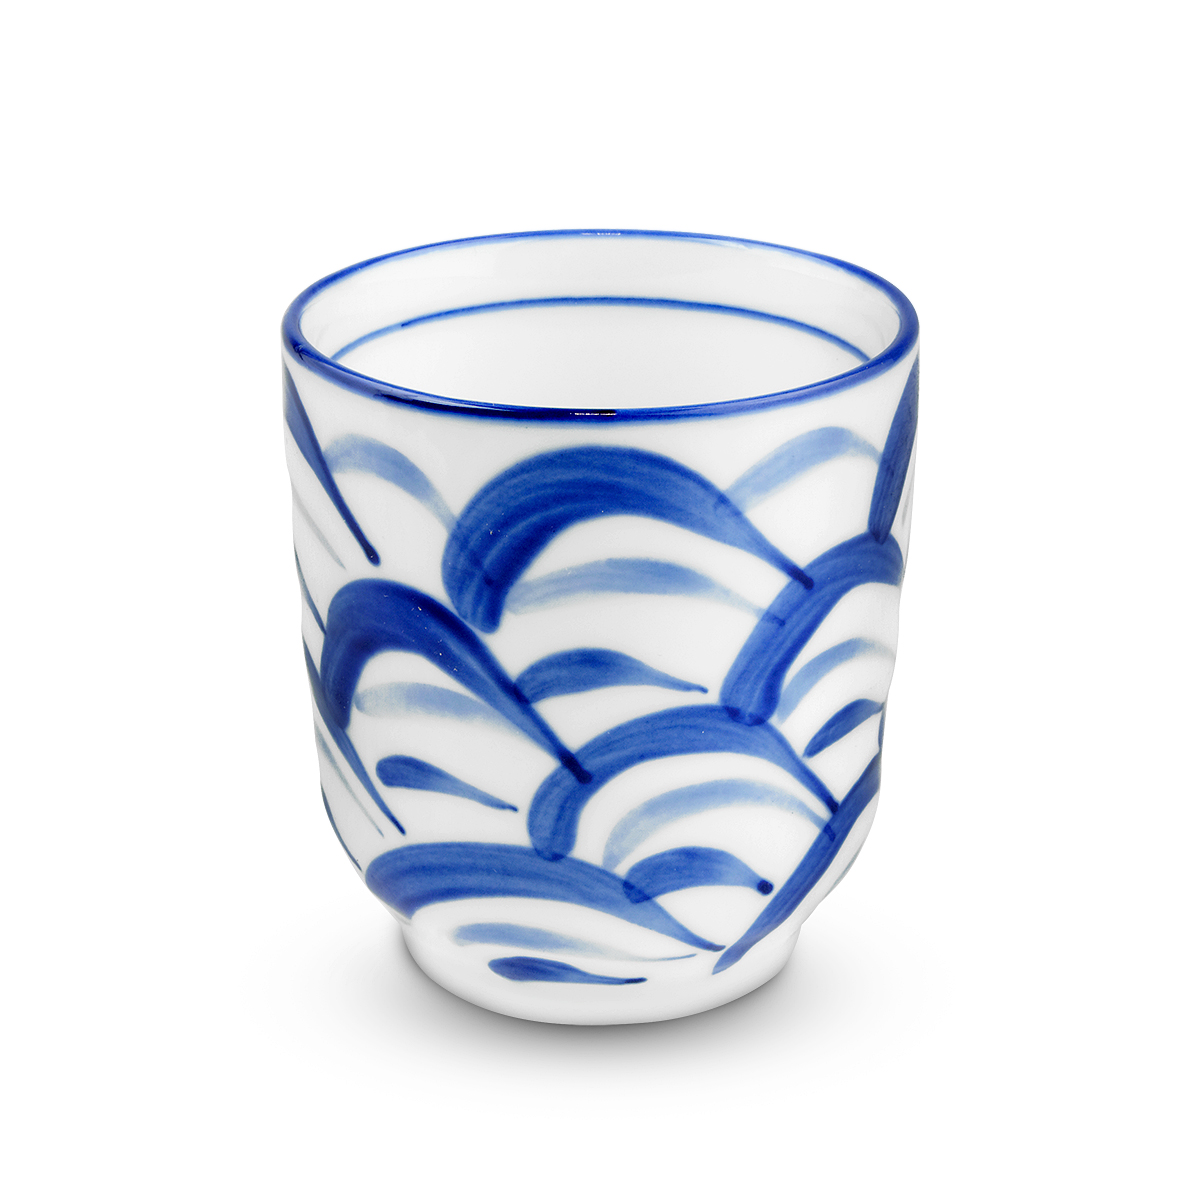 Vase, tacamuri, ustensile - Ceasca ceramica (model alb/albastru) 7cm GT, asianfood.ro